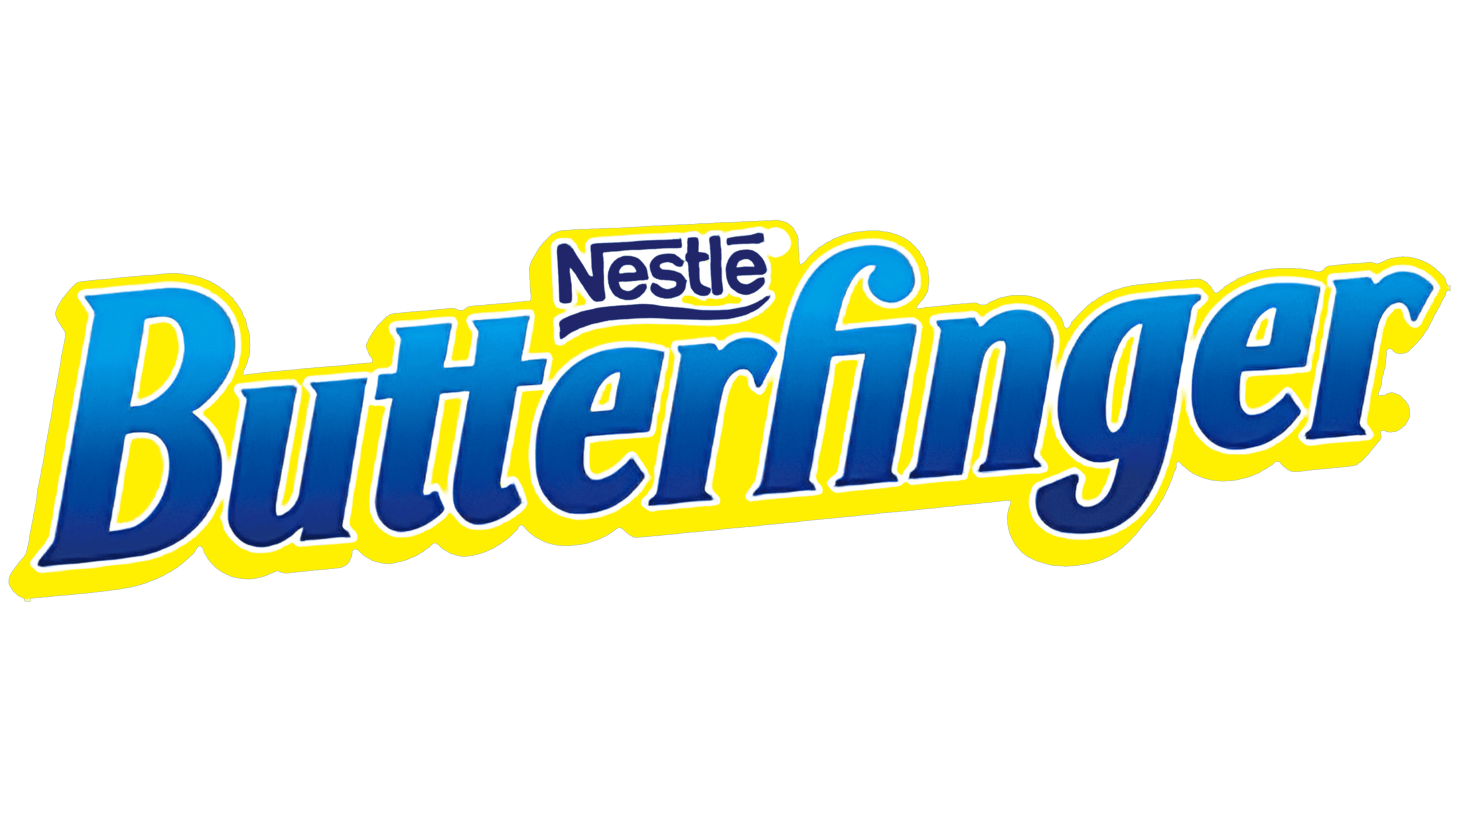 Butterfinger sign 2018